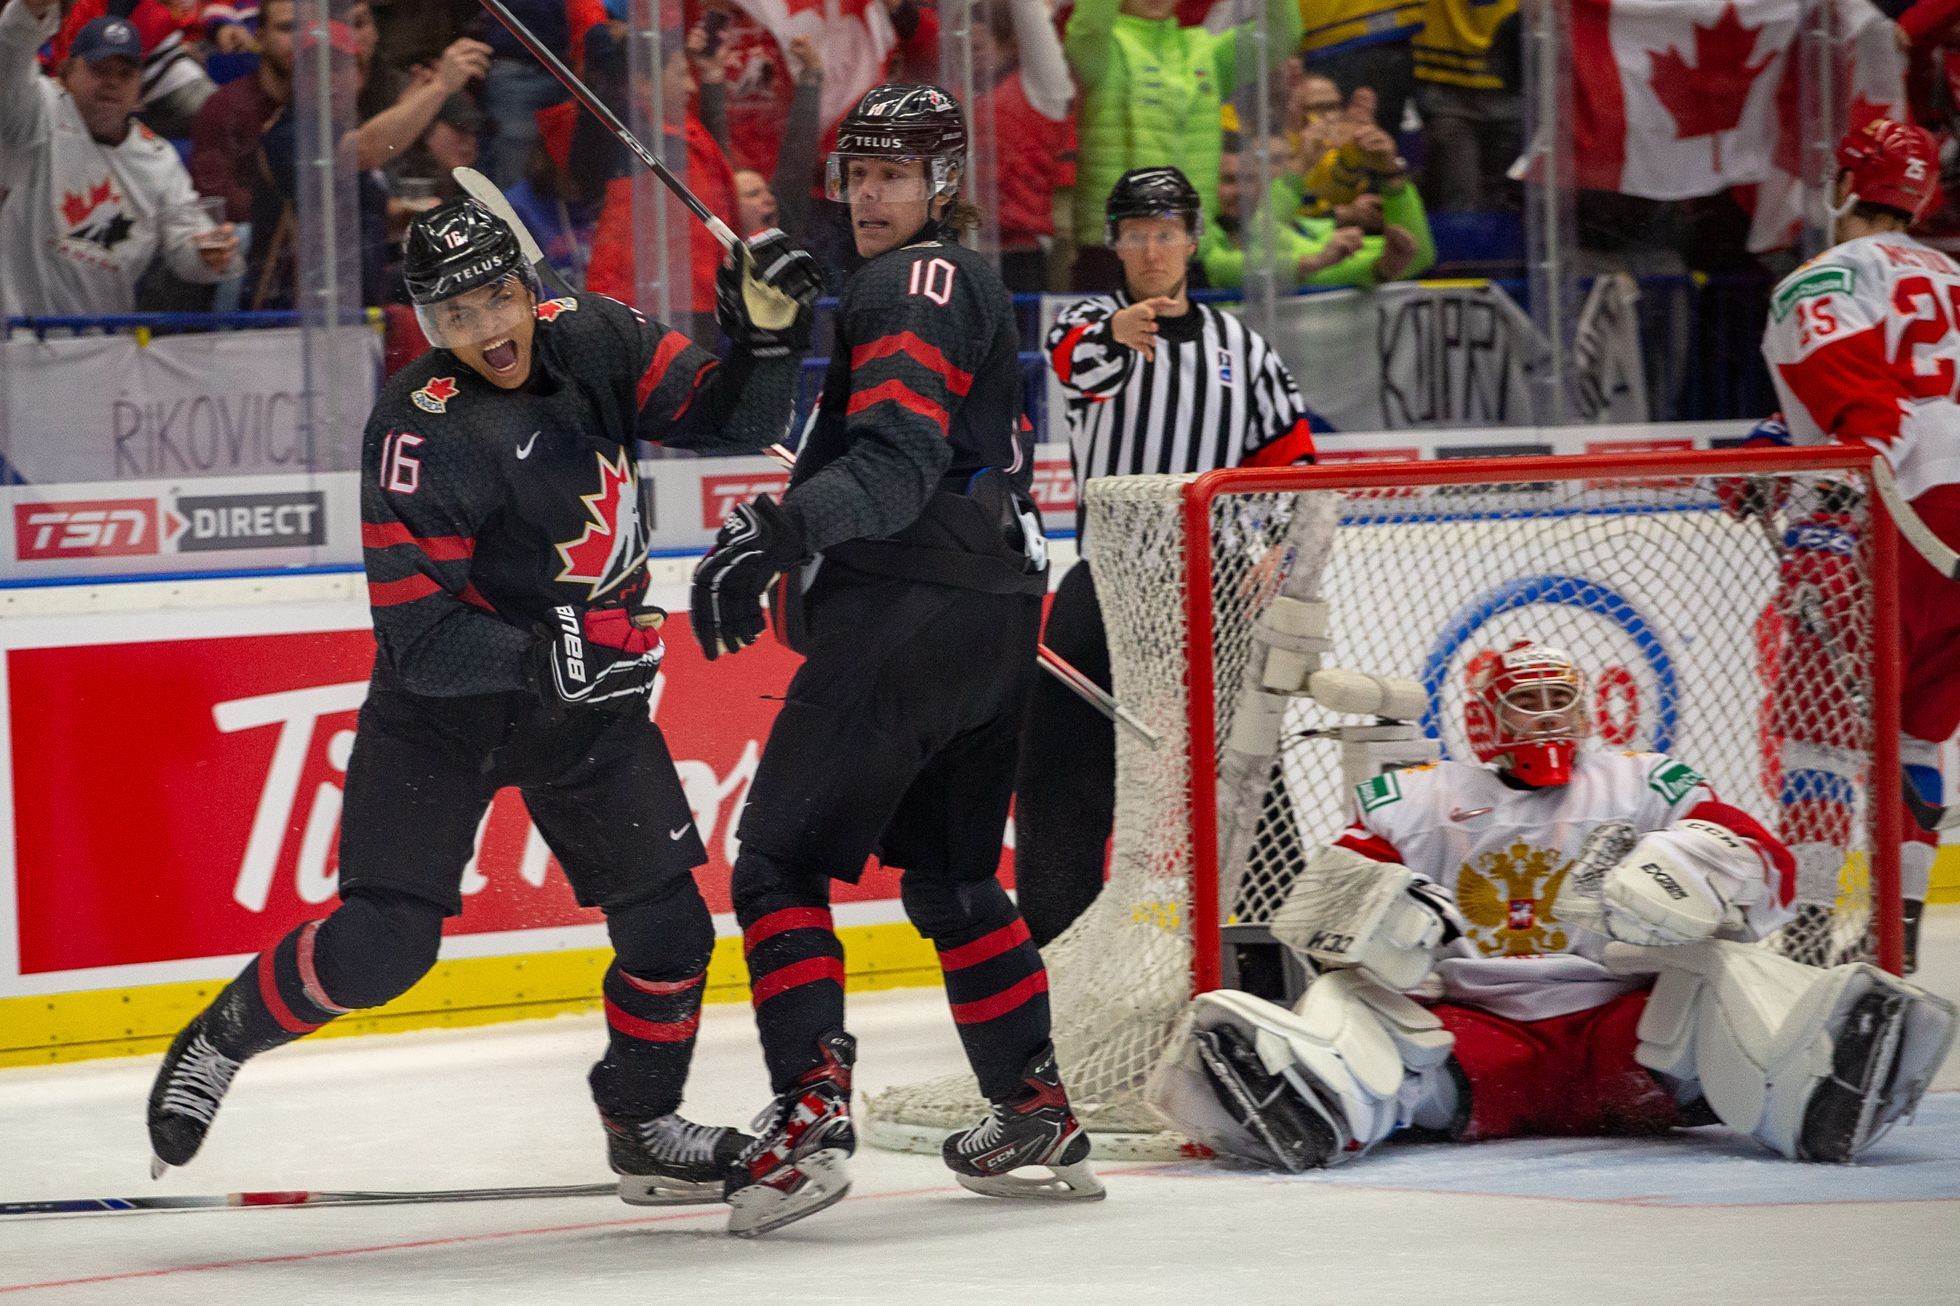 Hokejové MS juniorů 2020 v Ostravě, finále Kanada - Rusko: Akil Thomas (16) a Raphael Lavoie (10) slaví vítězný gól